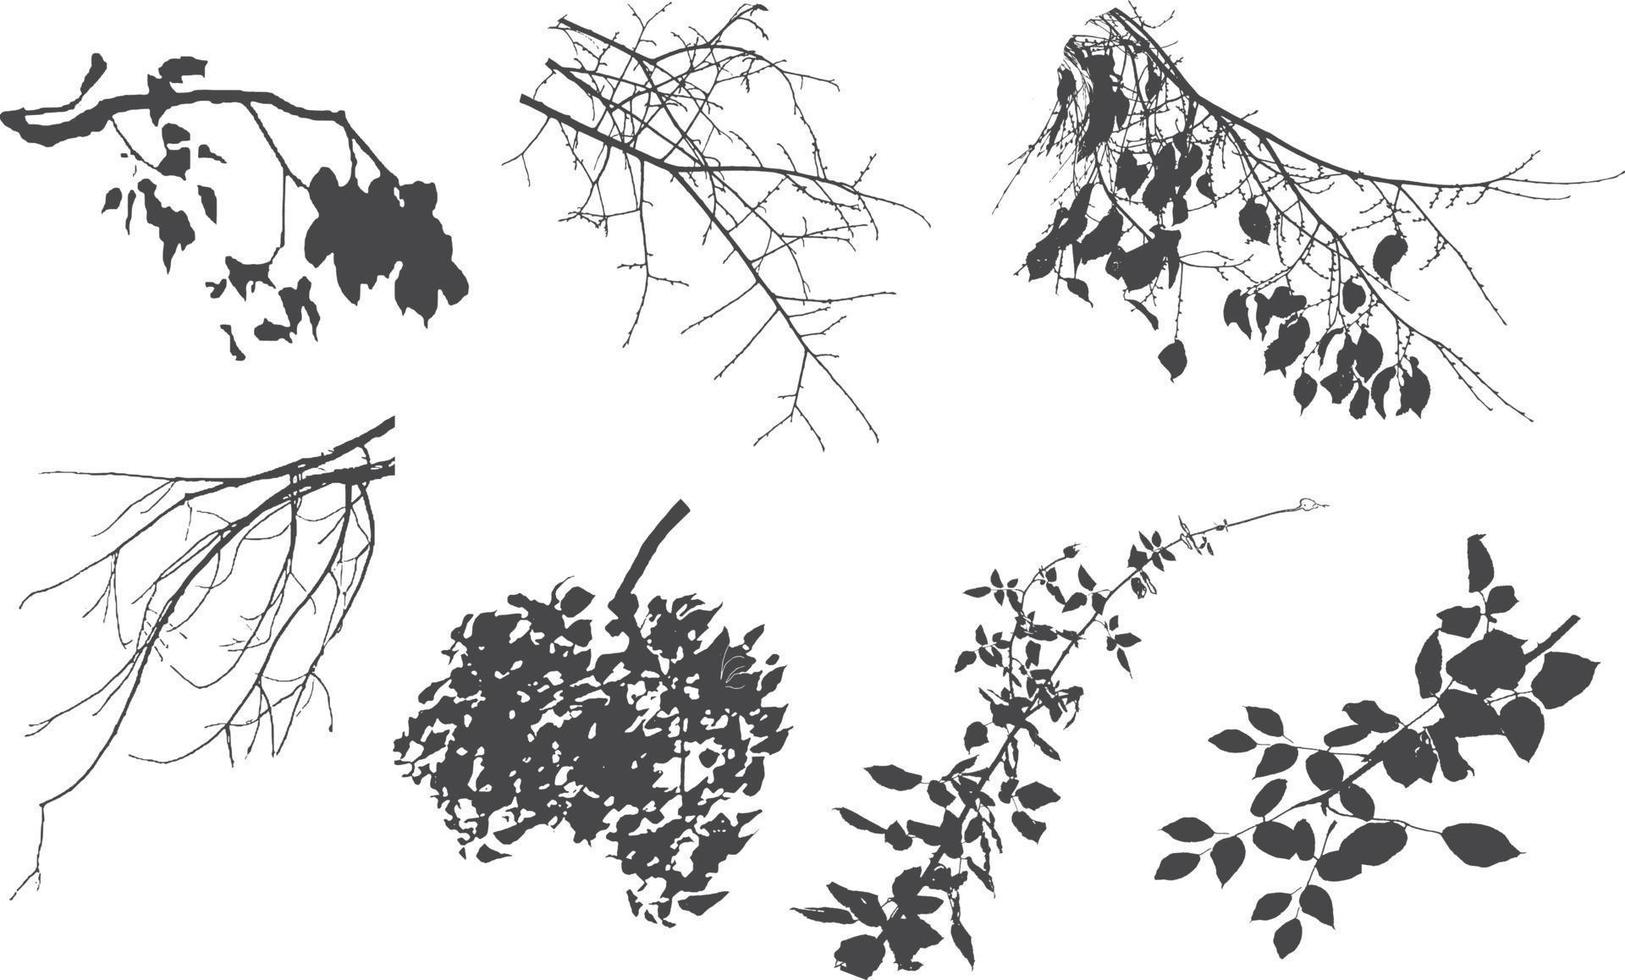 ensemble de plantes noires ornementales sous la forme d'une haie. arbuste de jardin réaliste, buisson saisonnier, buis, feuillage de brousse de couronne d'arbre. vecteur